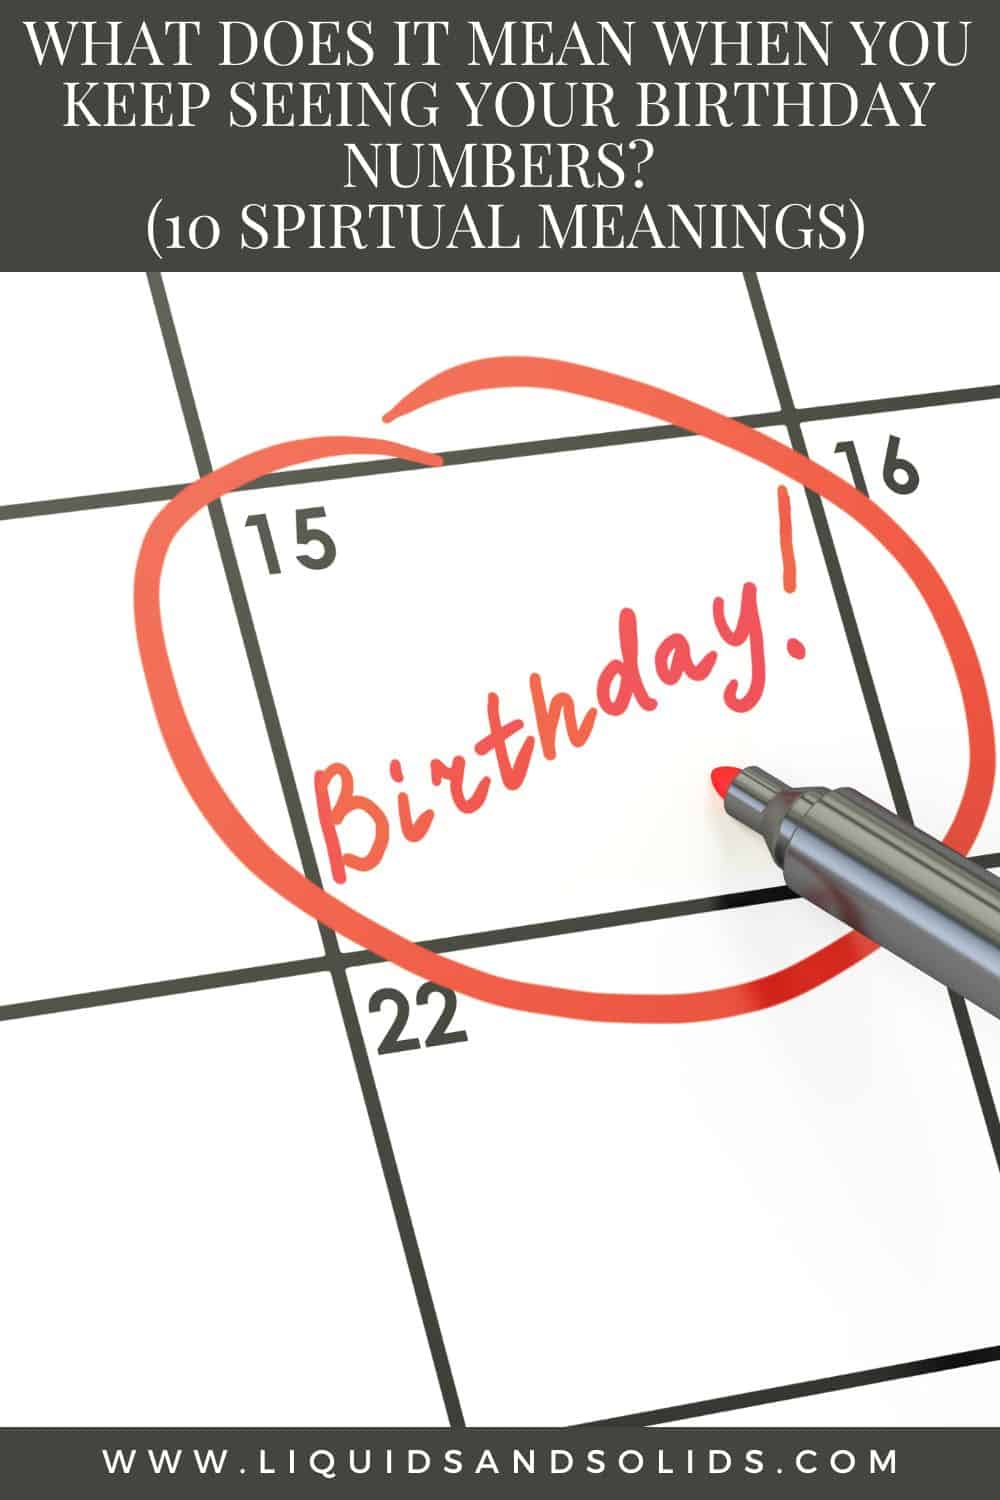  Mida tähendab see, kui sa näed pidevalt oma sünnipäevanumbreid? (10 vaimset tähendust)